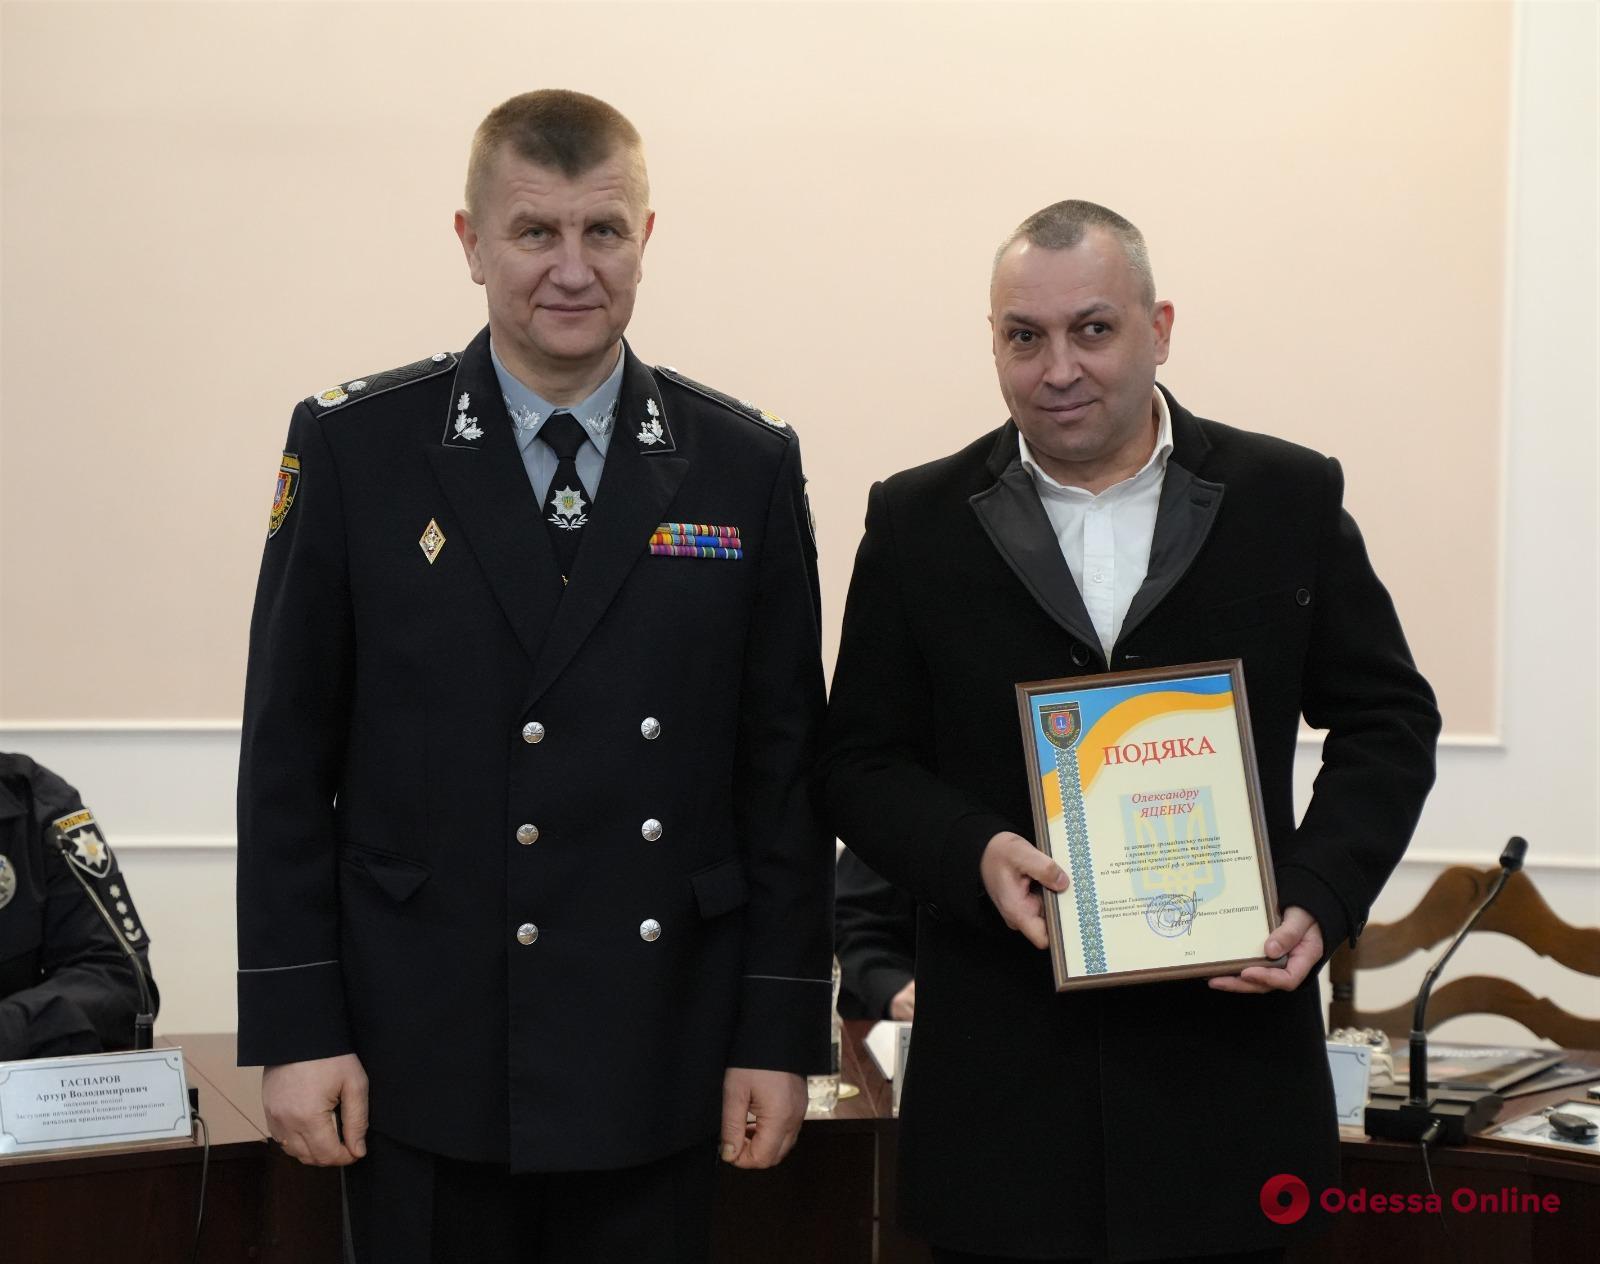 Двух одесситов наградили за помощь в задержании вооруженного разбойника